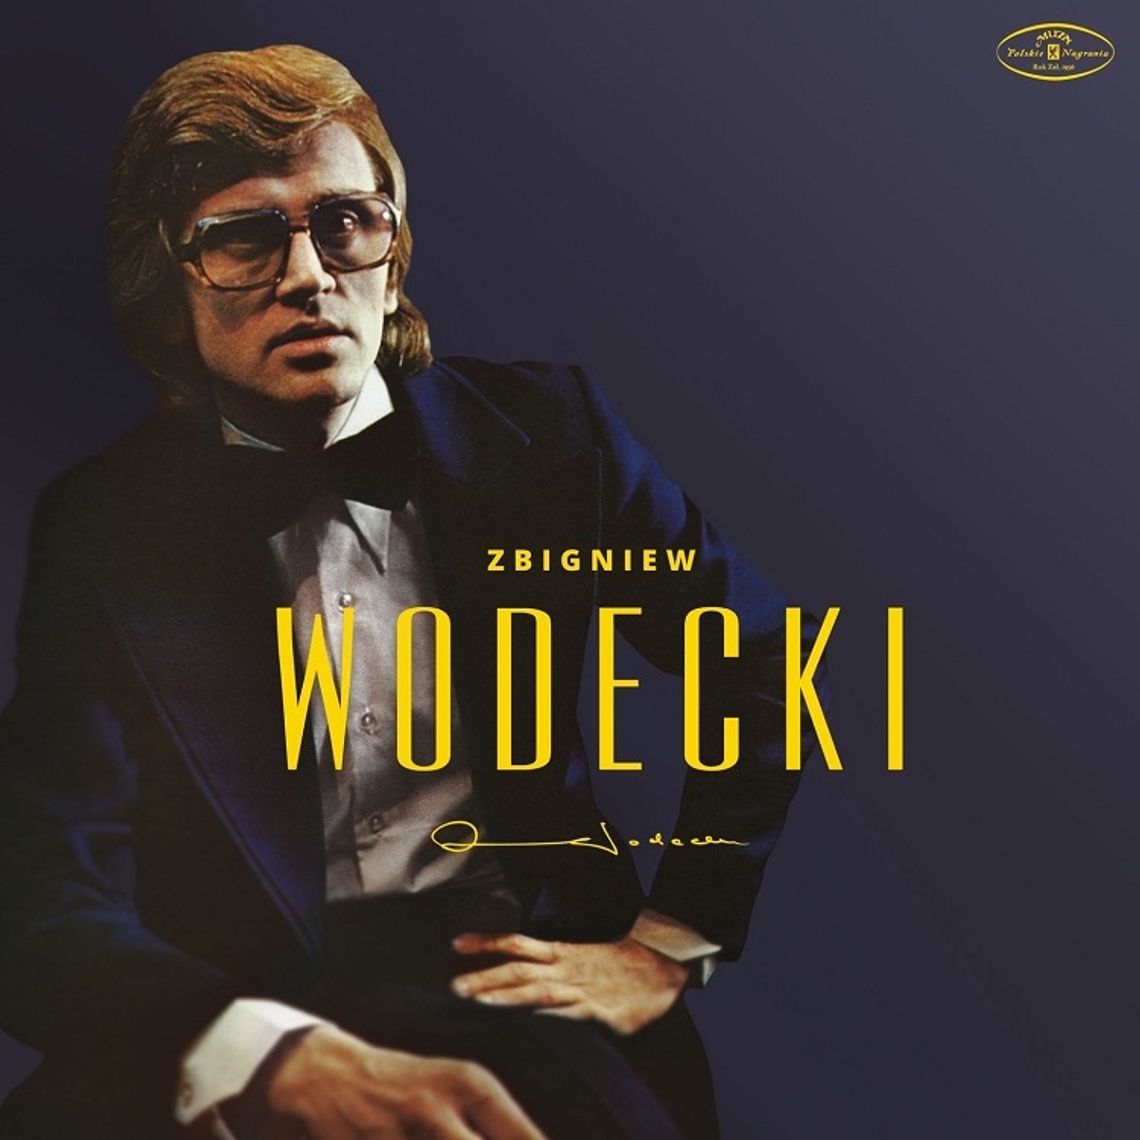 PŁYTA TYGODNIA - Zbigniew Wodecki  "Vinyl"